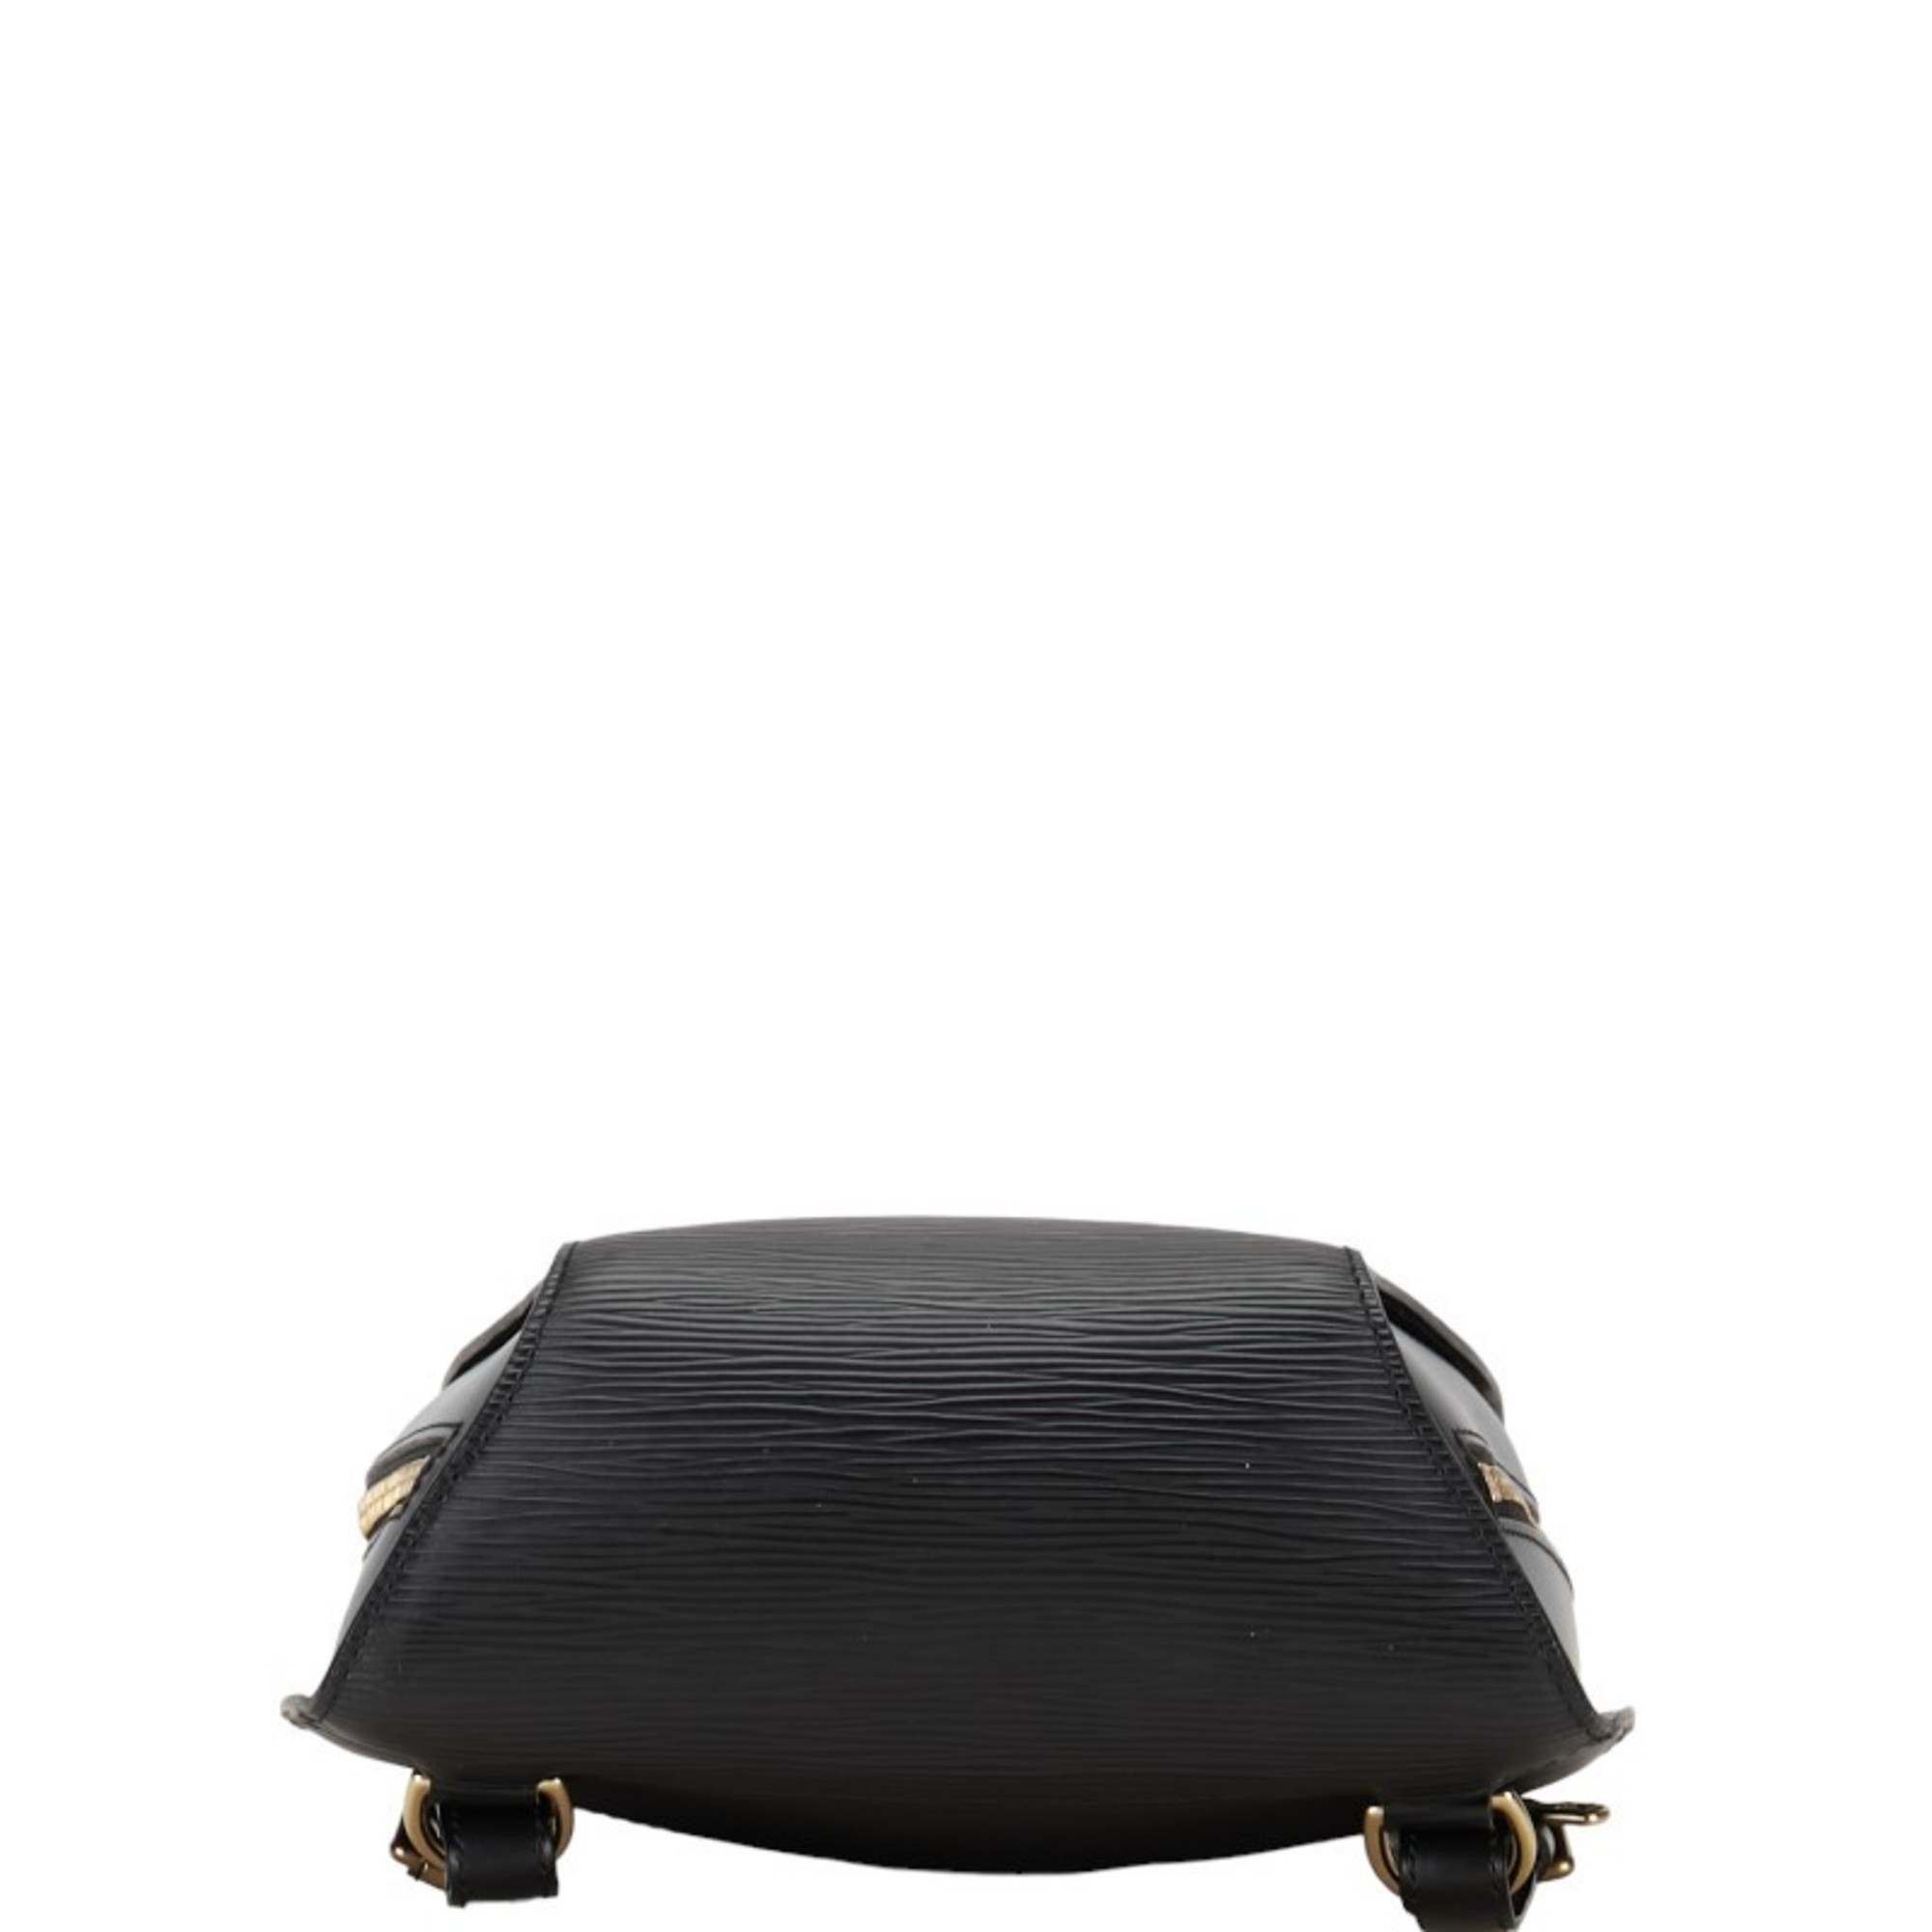 Louis Vuitton Epi Mabillon Backpack M52232 Noir Black Leather Women's LOUIS VUITTON